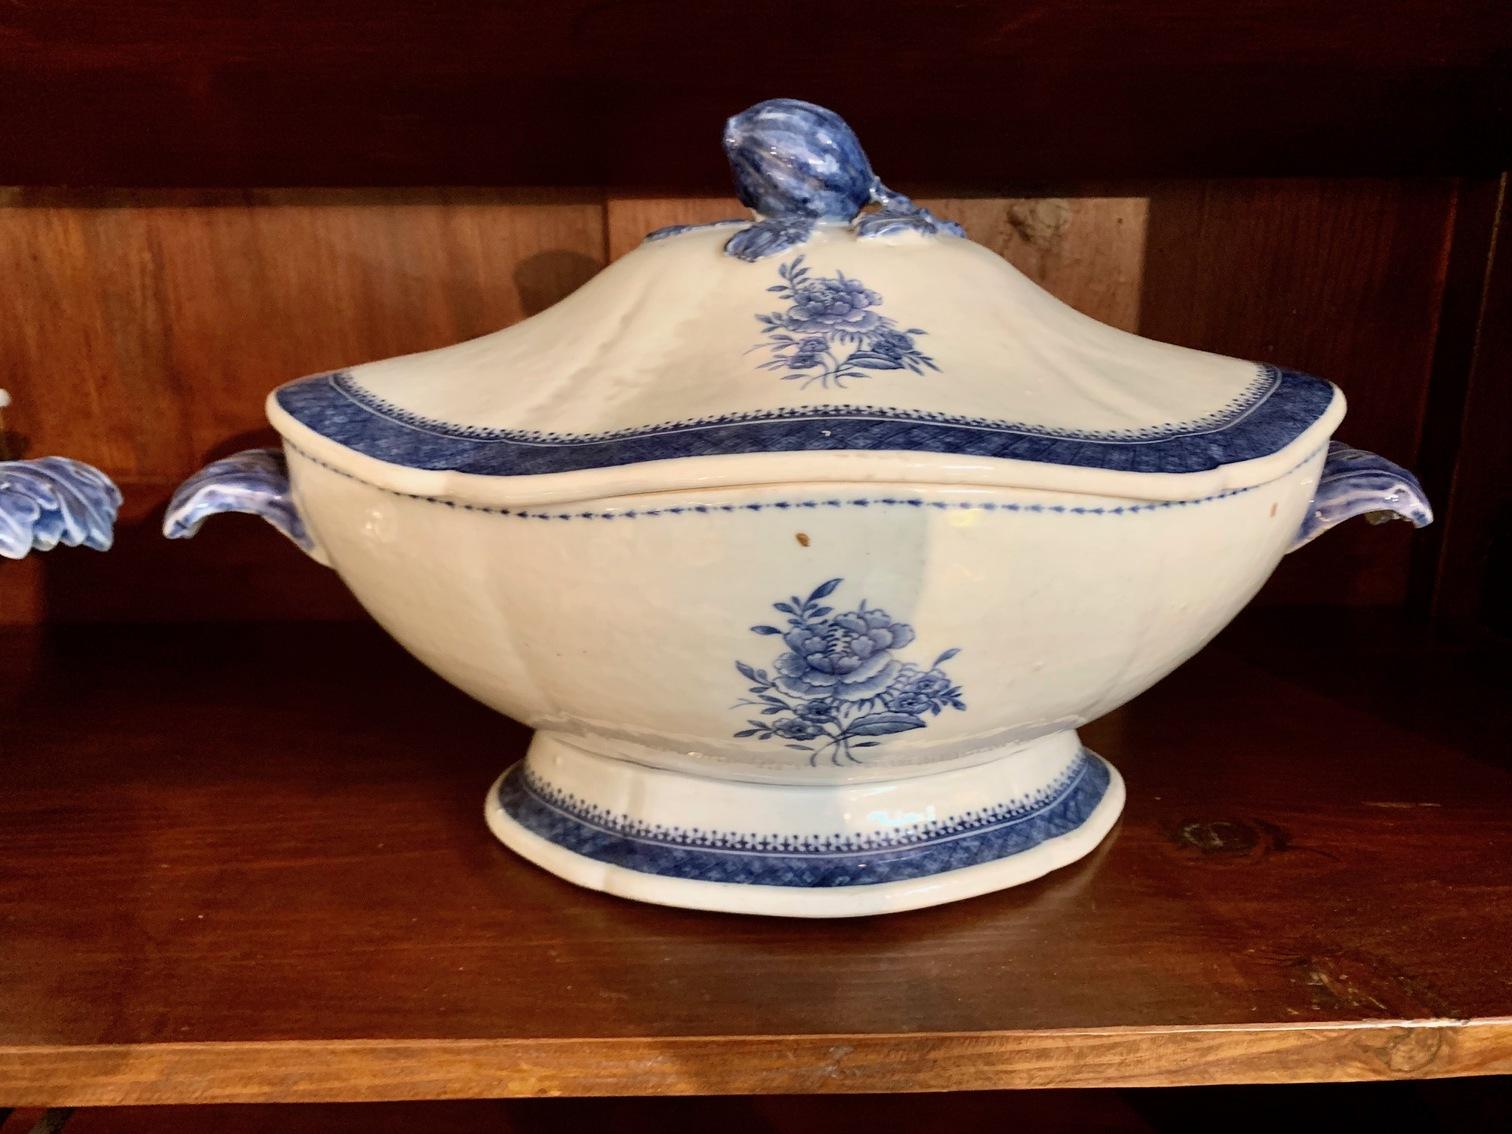 Paire de soupières en porcelaine bleu et blanc pour l'exportation, Chine, dynastie Qing, période Qianlong Jiaqing, fin du XVIIIe siècle, début du XIXe siècle, l'une des soupières présente une petite marque sur le couvercle.